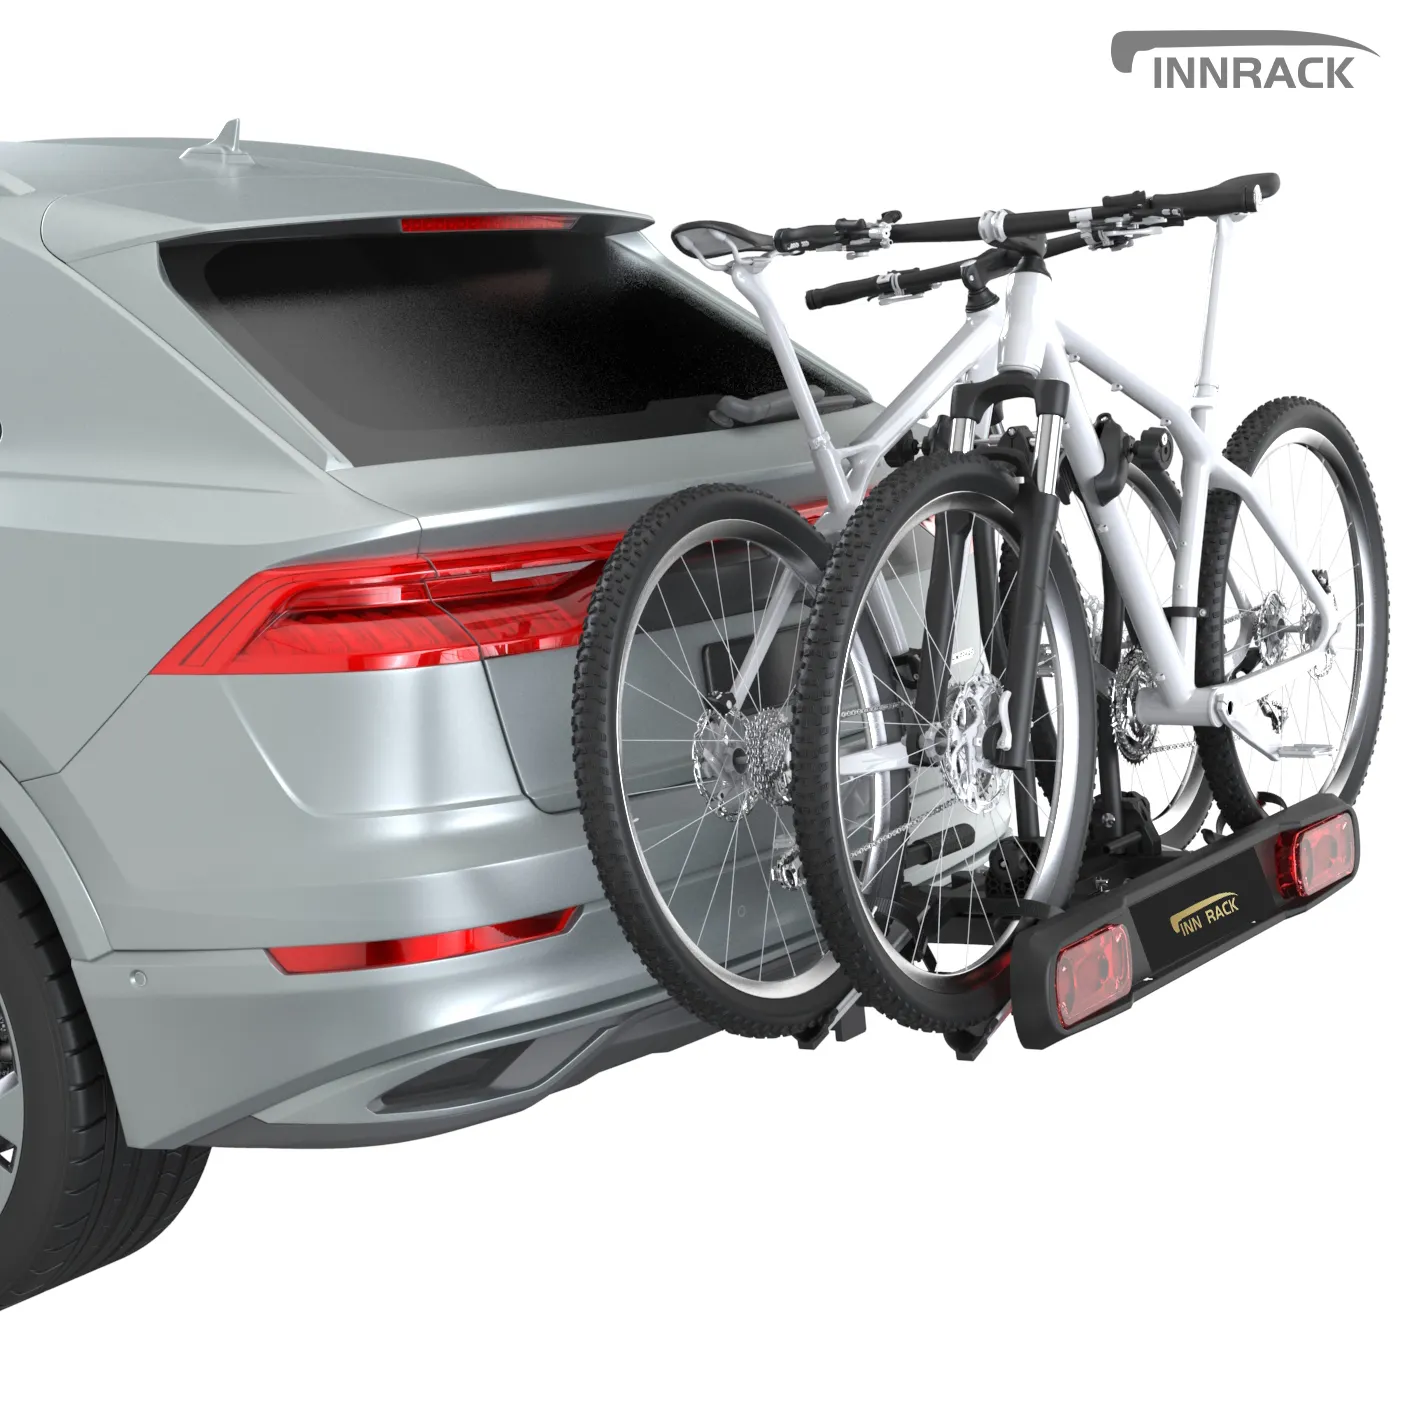 OEM универсальная стойка для велосипеда, транспортного средства, стойка для перевозки велосипеда, прицеп, буксировочная стойка для 2 велосипедов